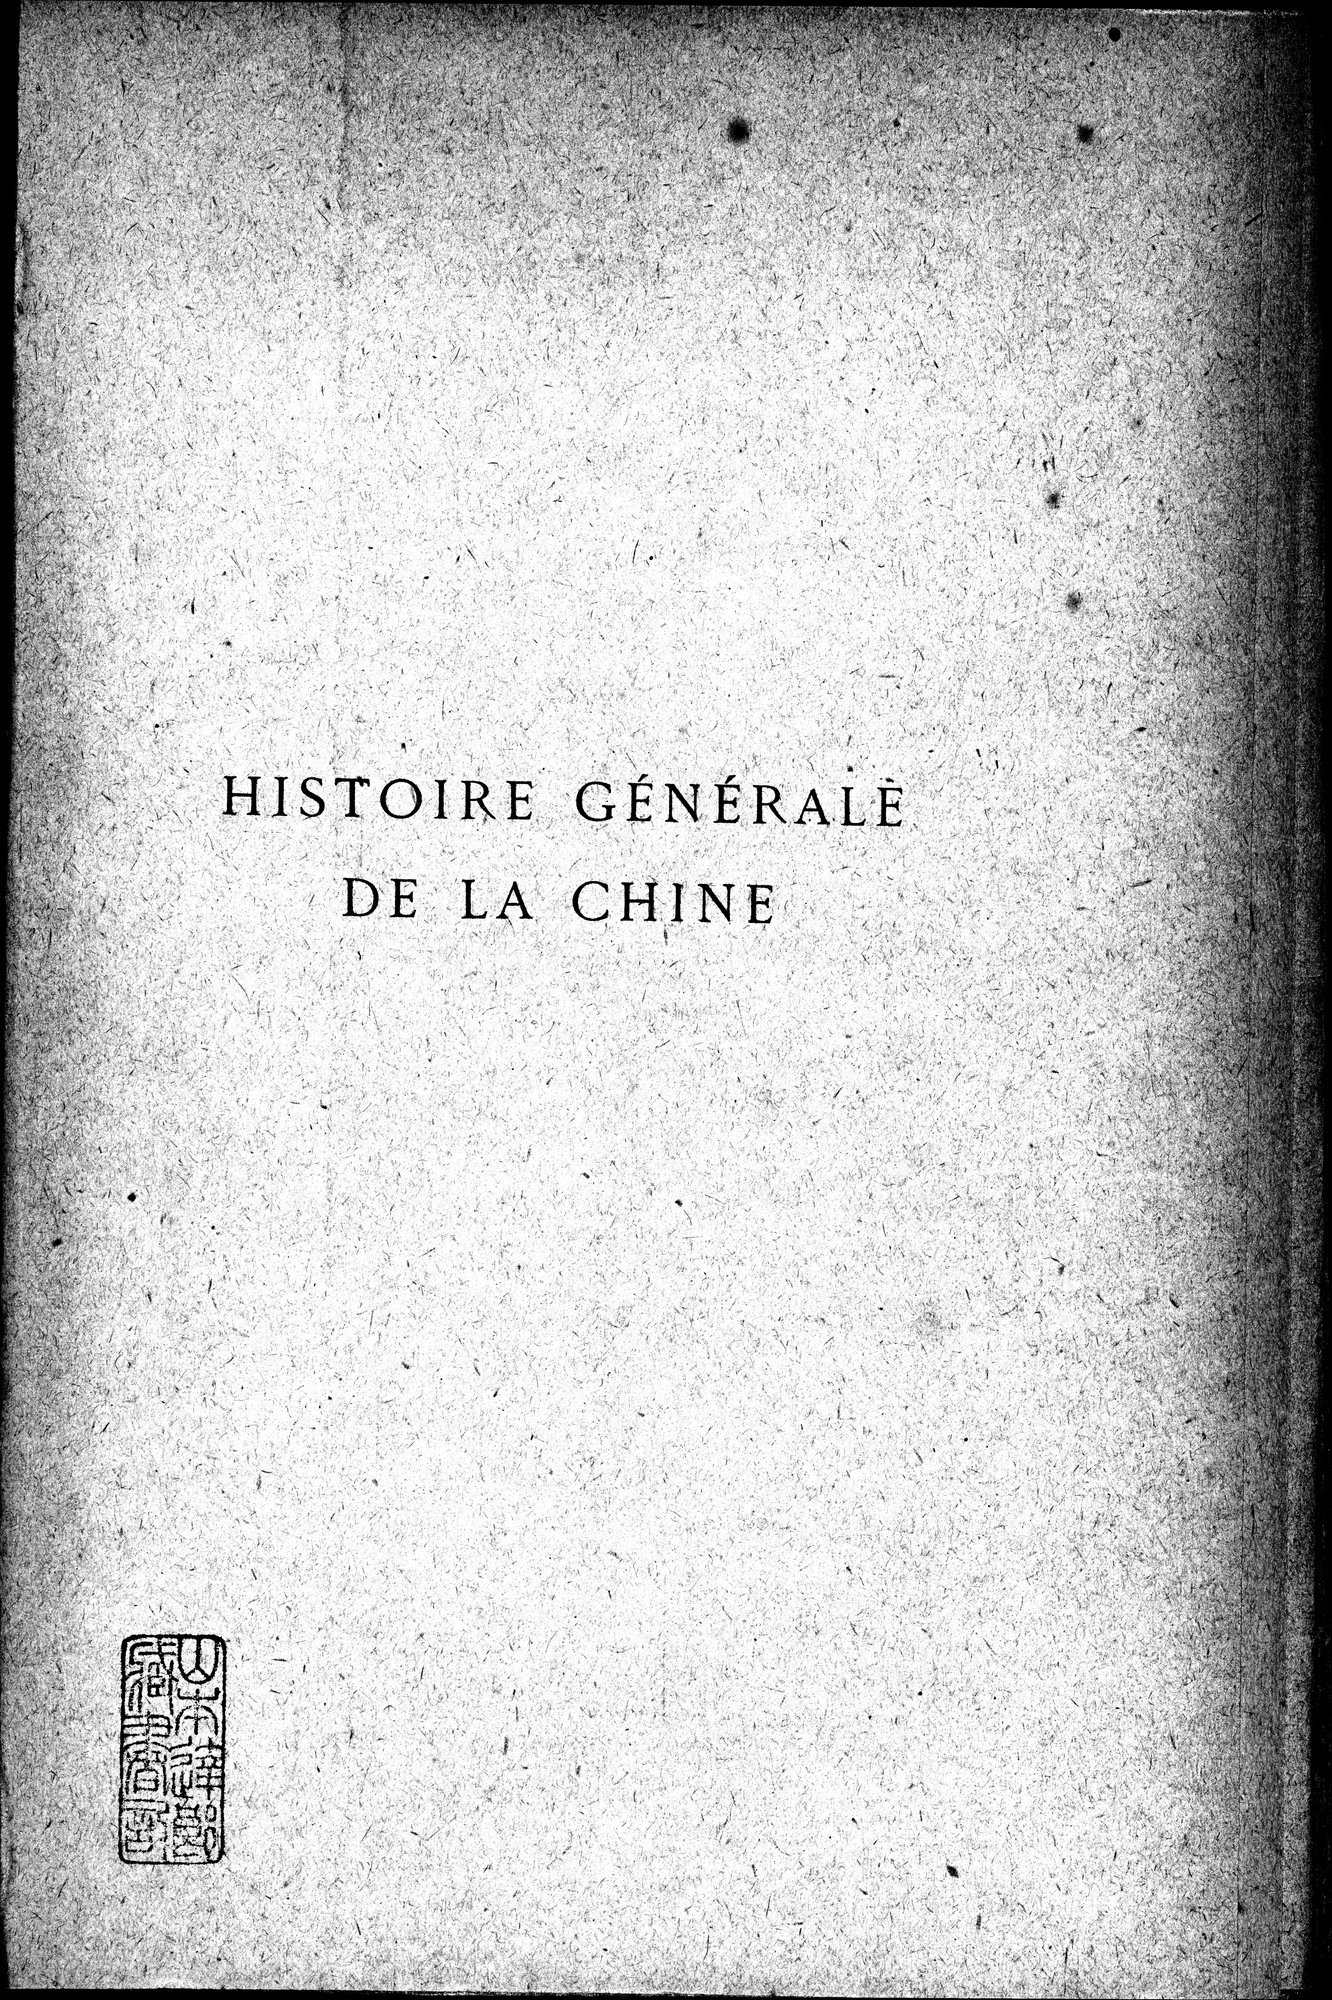 Histoire Générale de la Chine : vol.4 / Page 3 (Grayscale High Resolution Image)